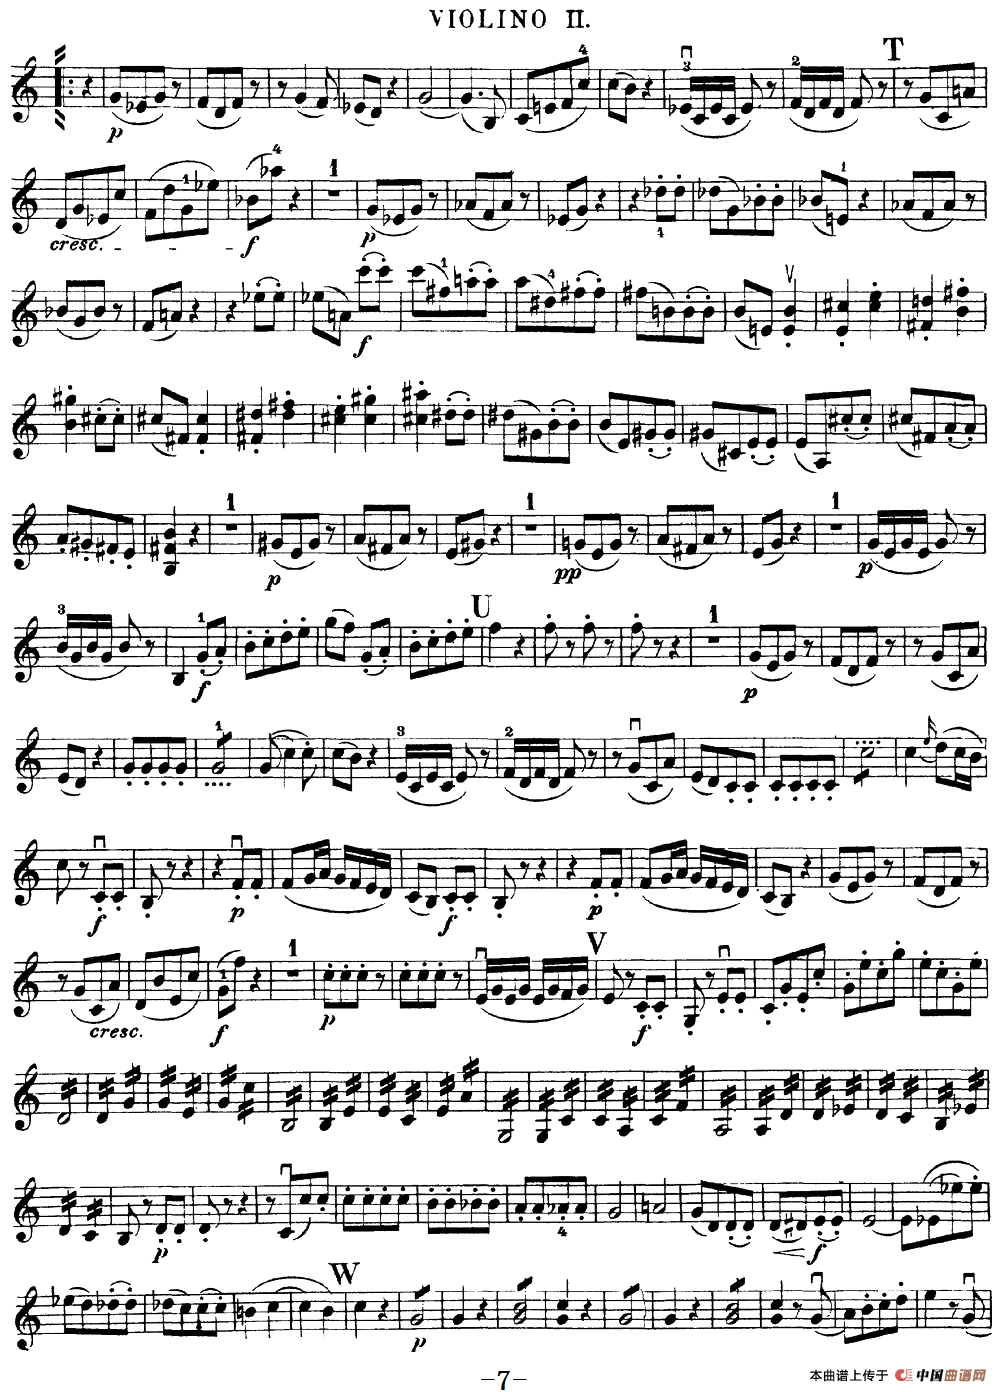 Mozart《Quartet No.19 in C Major,K.465》（Violin 2分谱）